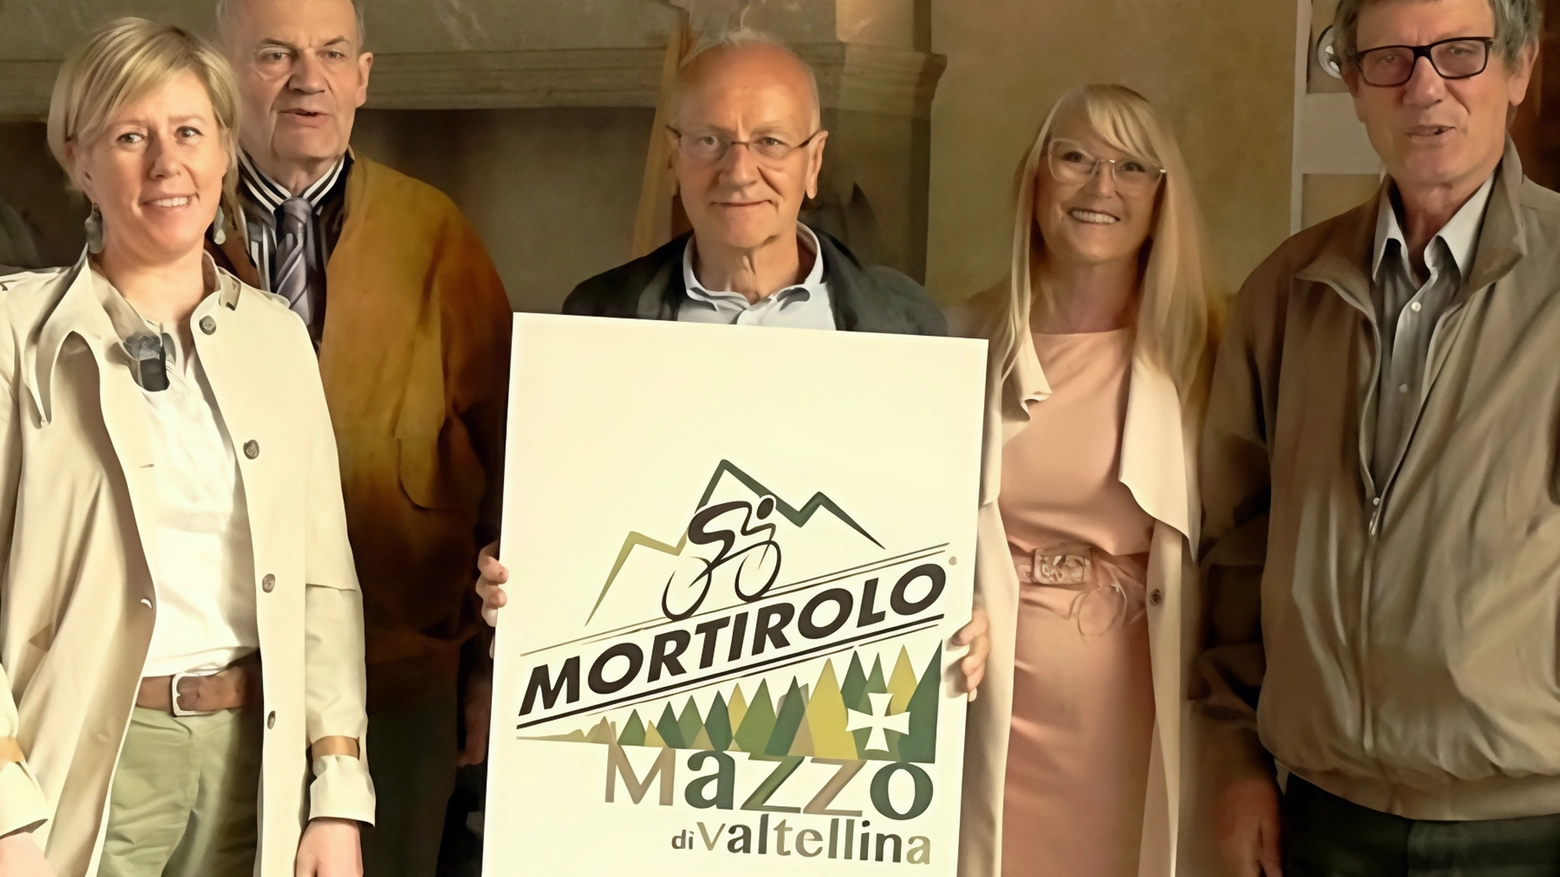 Il Comune di Mazzo di Valtellina presenta il nuovo logo turistico "Mortirolo più Mazzo", simbolo della storica salita ciclistica legata al territorio. Realizzato dal grafico Marco Foppoli, il logo valorizza l'identità paesaggistica e storica della zona.